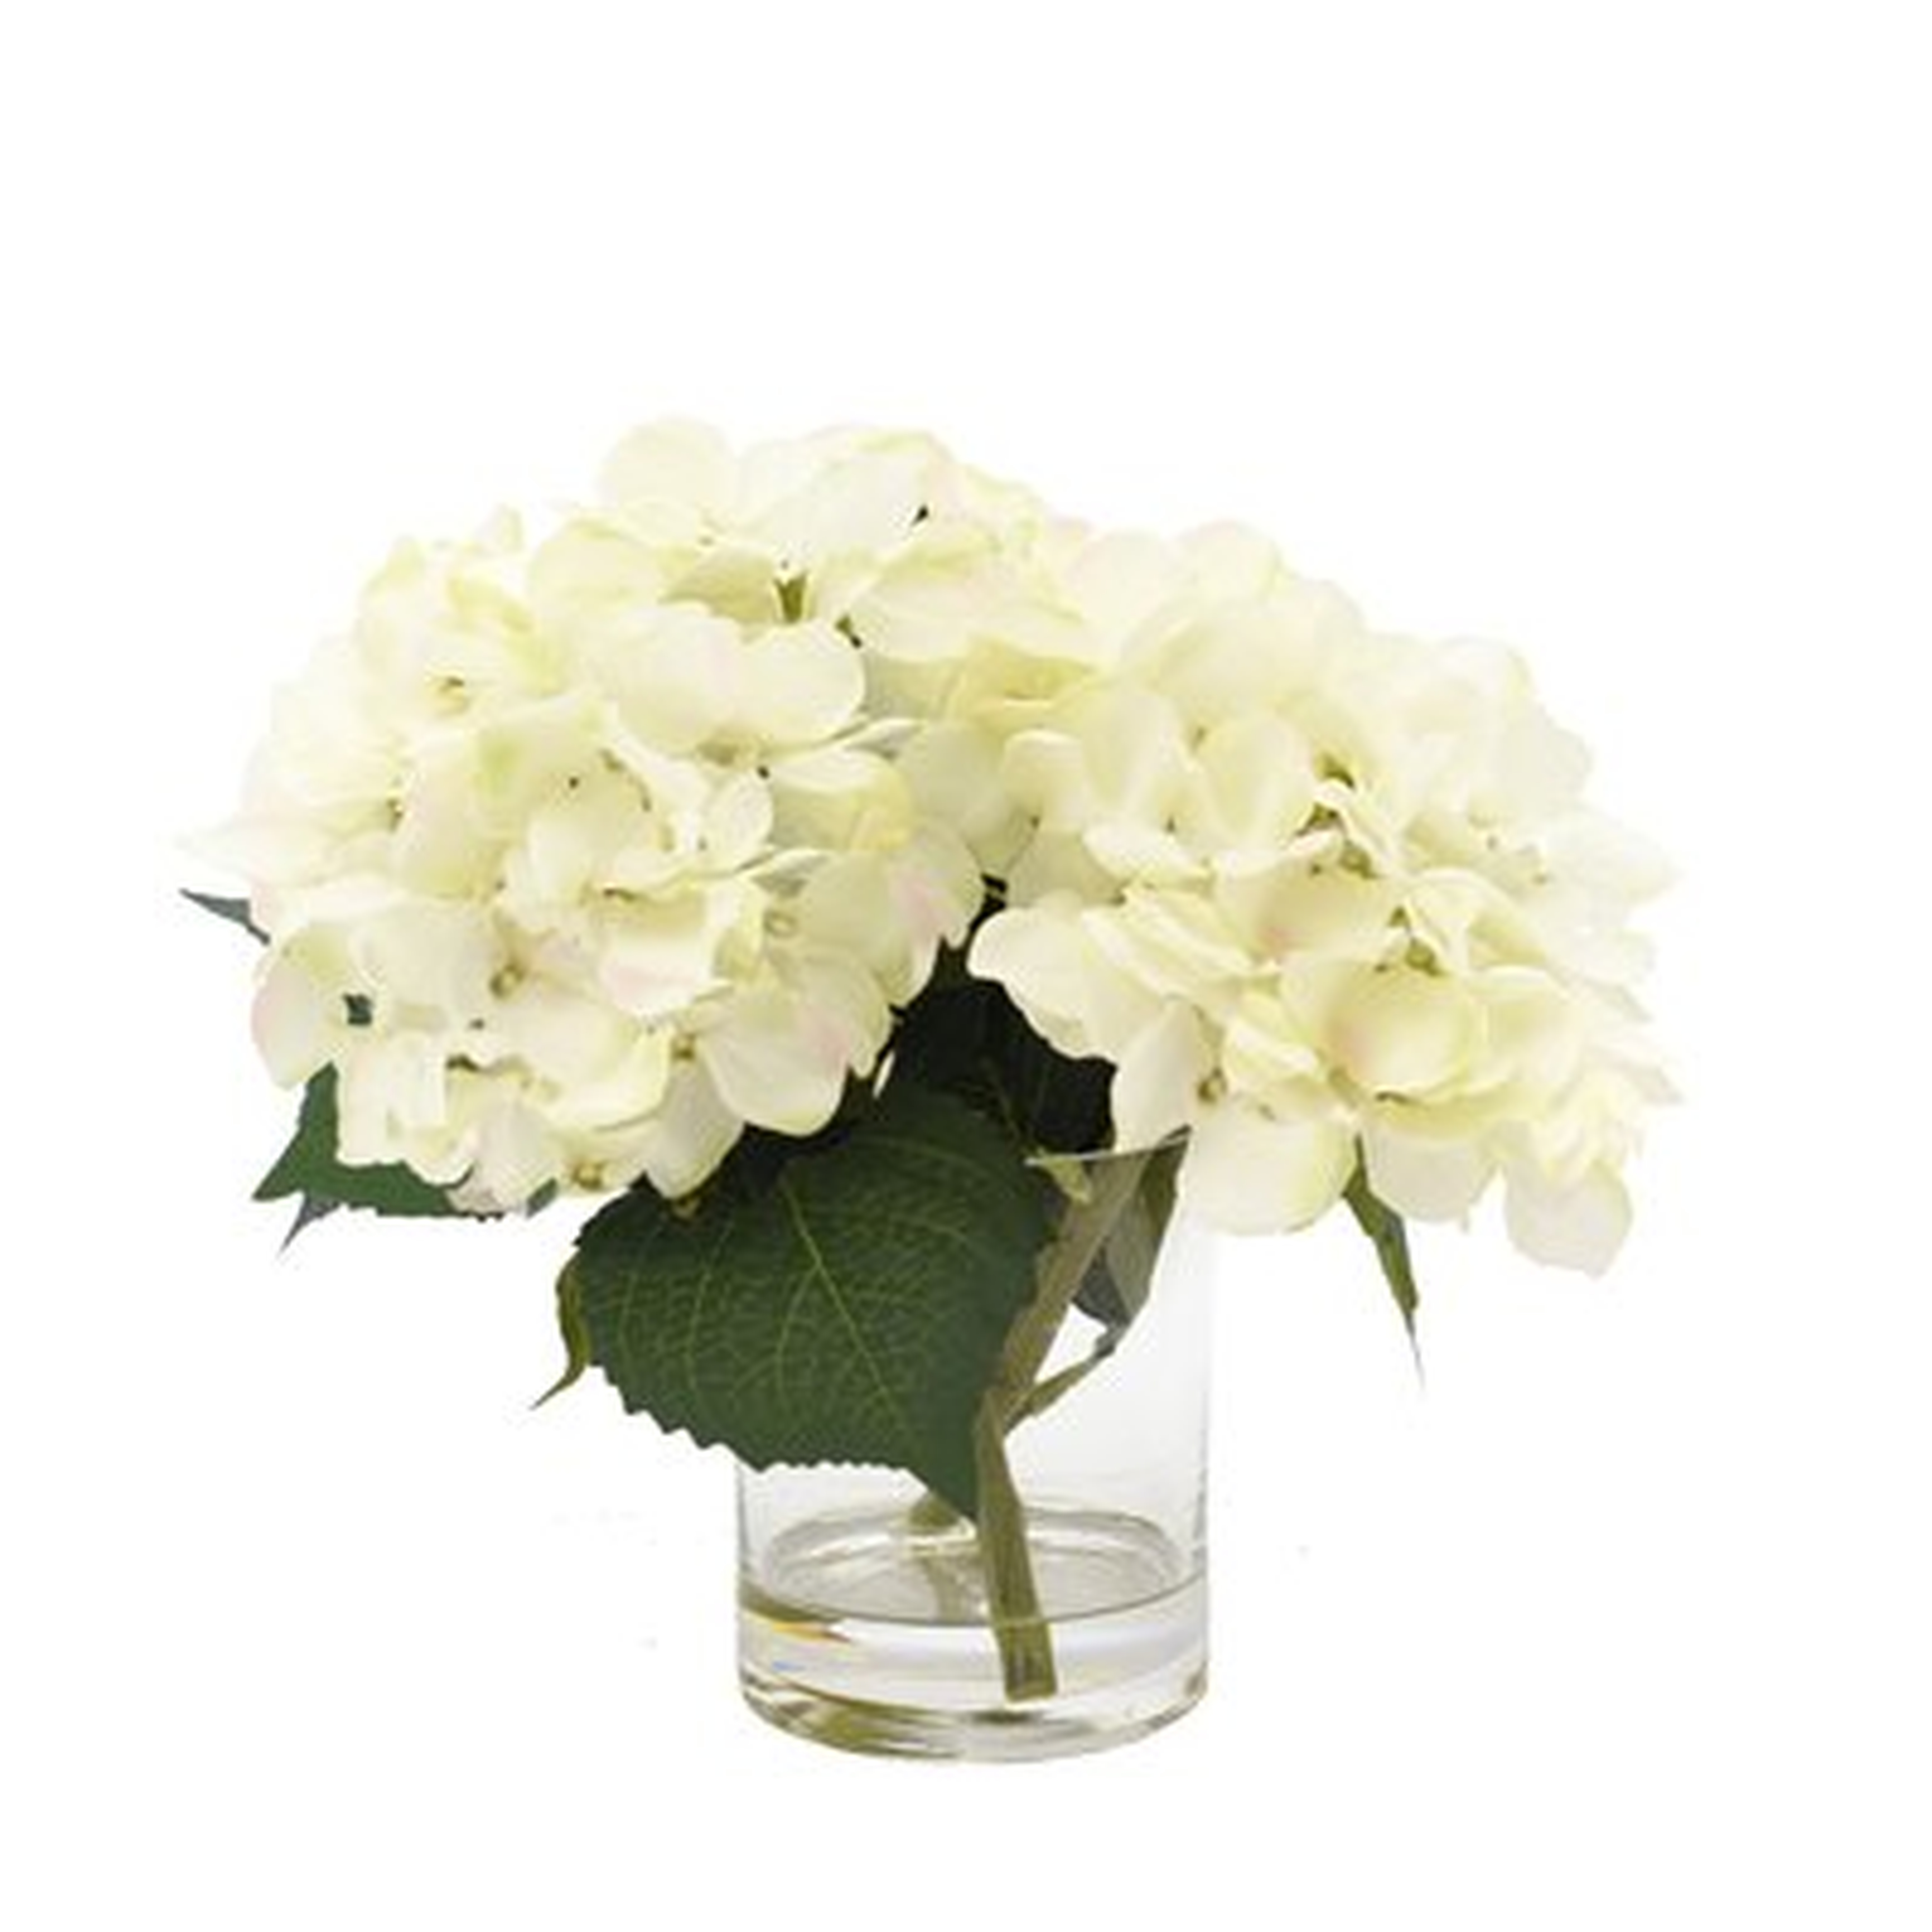 White Hydrangea Floral Arrangement in Glass Vase - AllModern